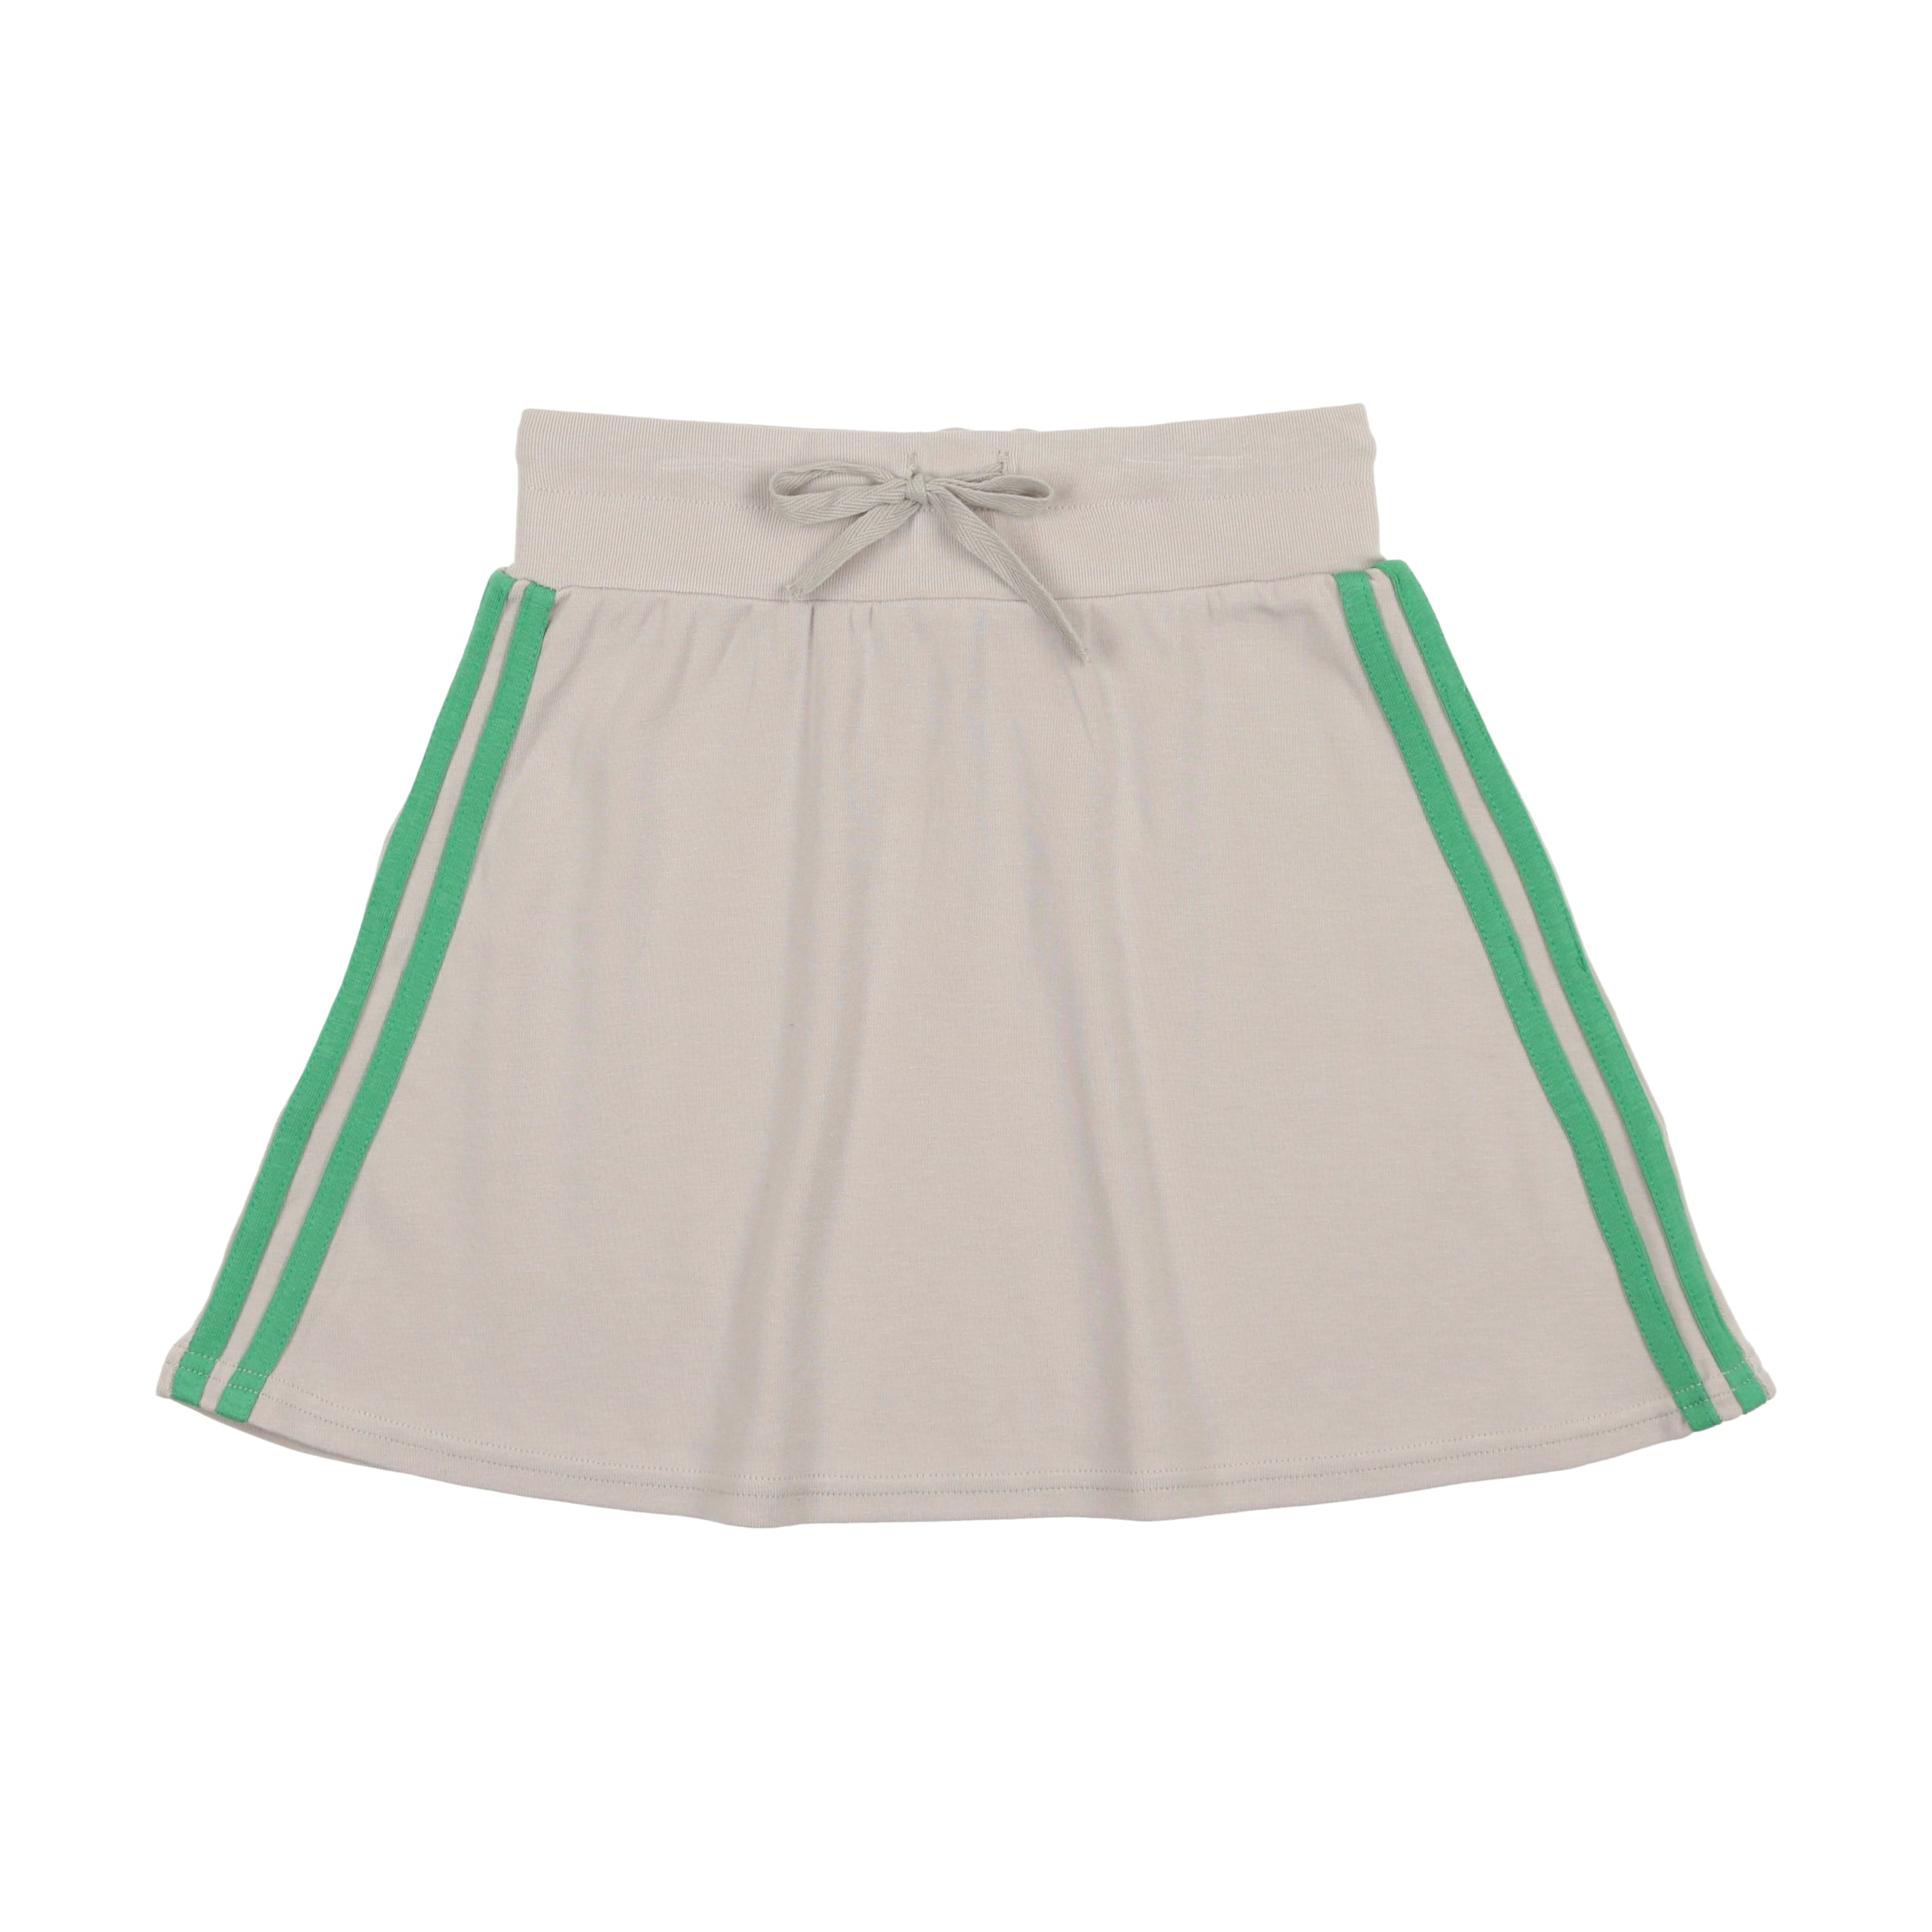 Lil Legs Green Accent Tennis Skirt